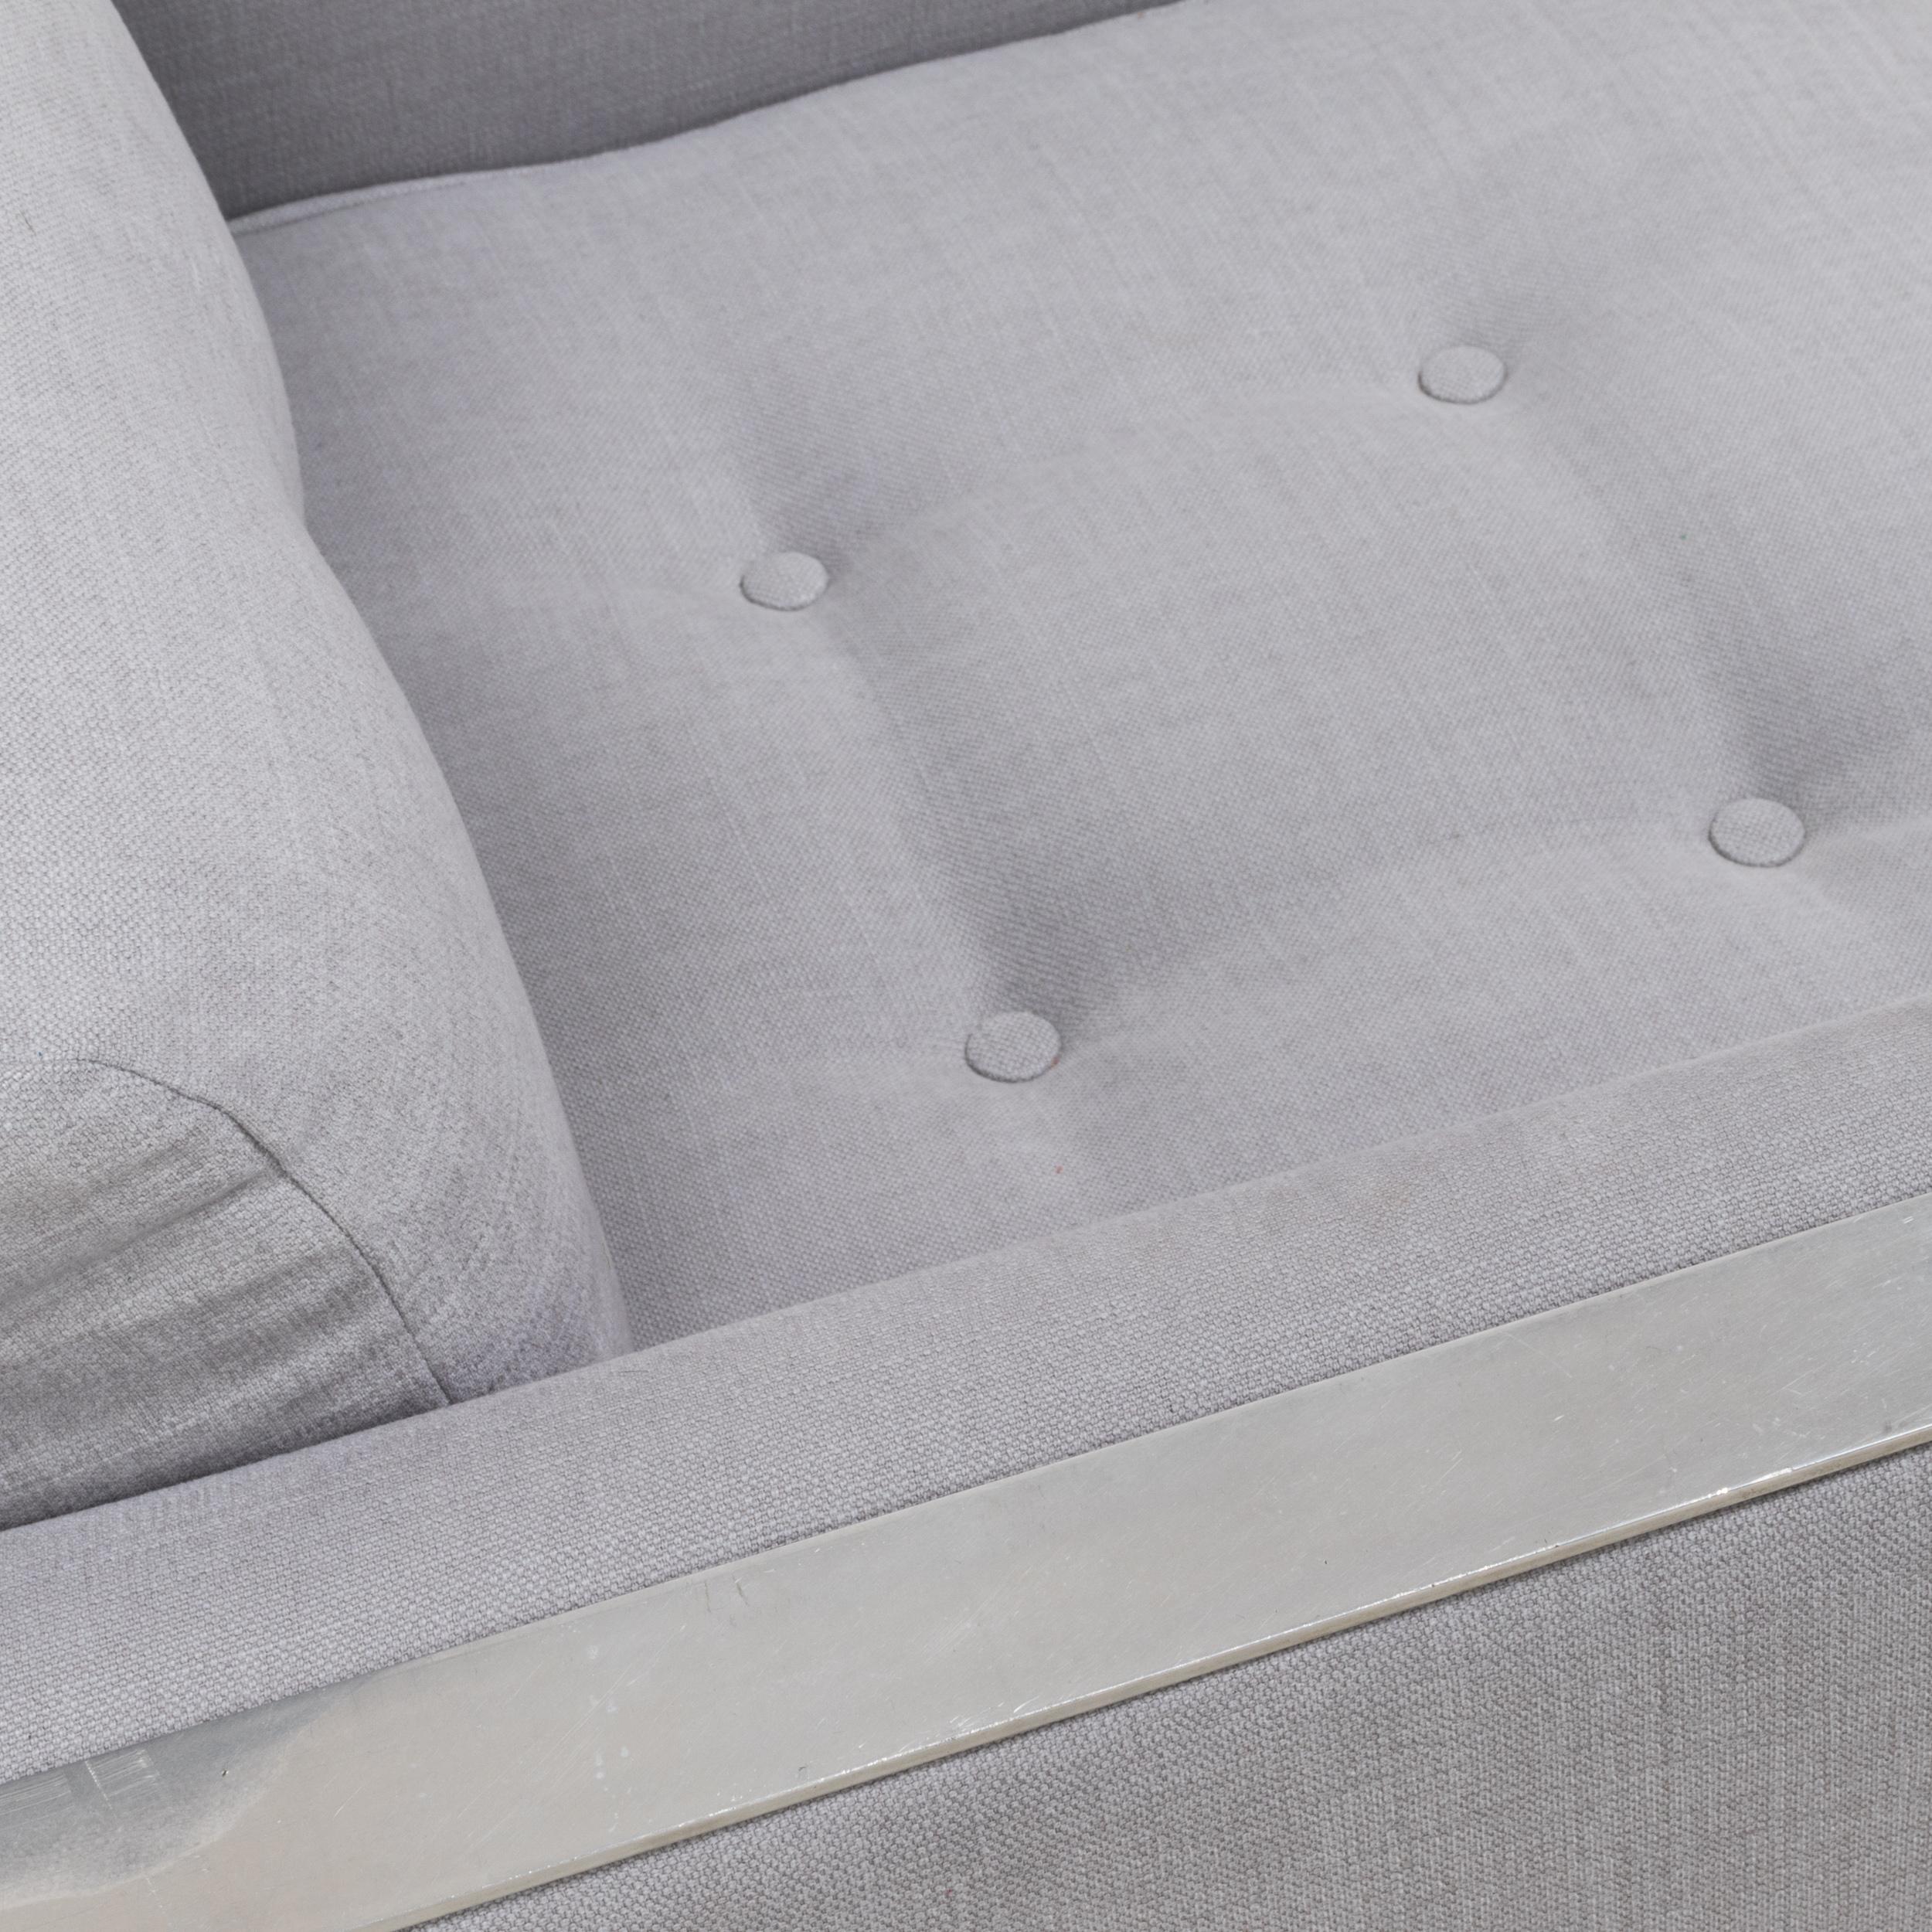 Fabric Milo Baughman Style Mid Century Grey and Chrome Frame Armchair